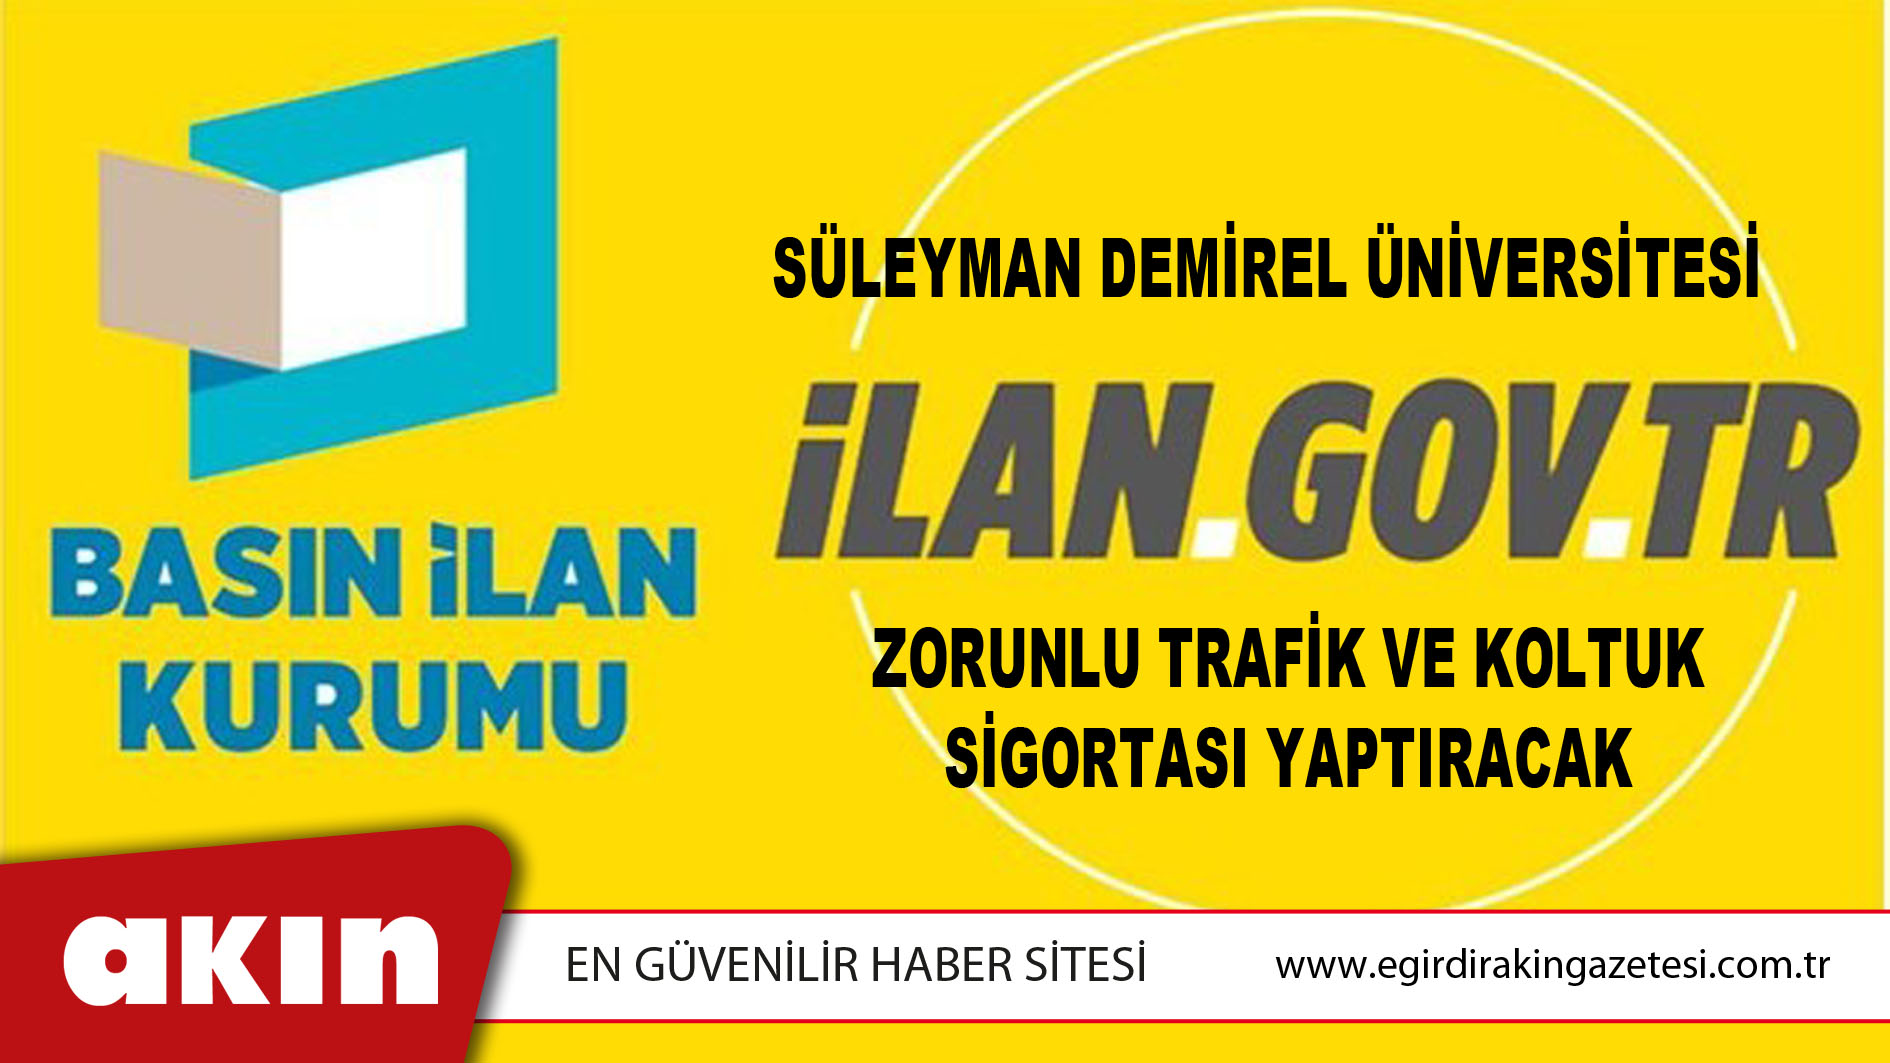 Süleyman Demirel Üniversitesi Zorunlu Trafik Ve Koltuk Sigortası Yaptıracak